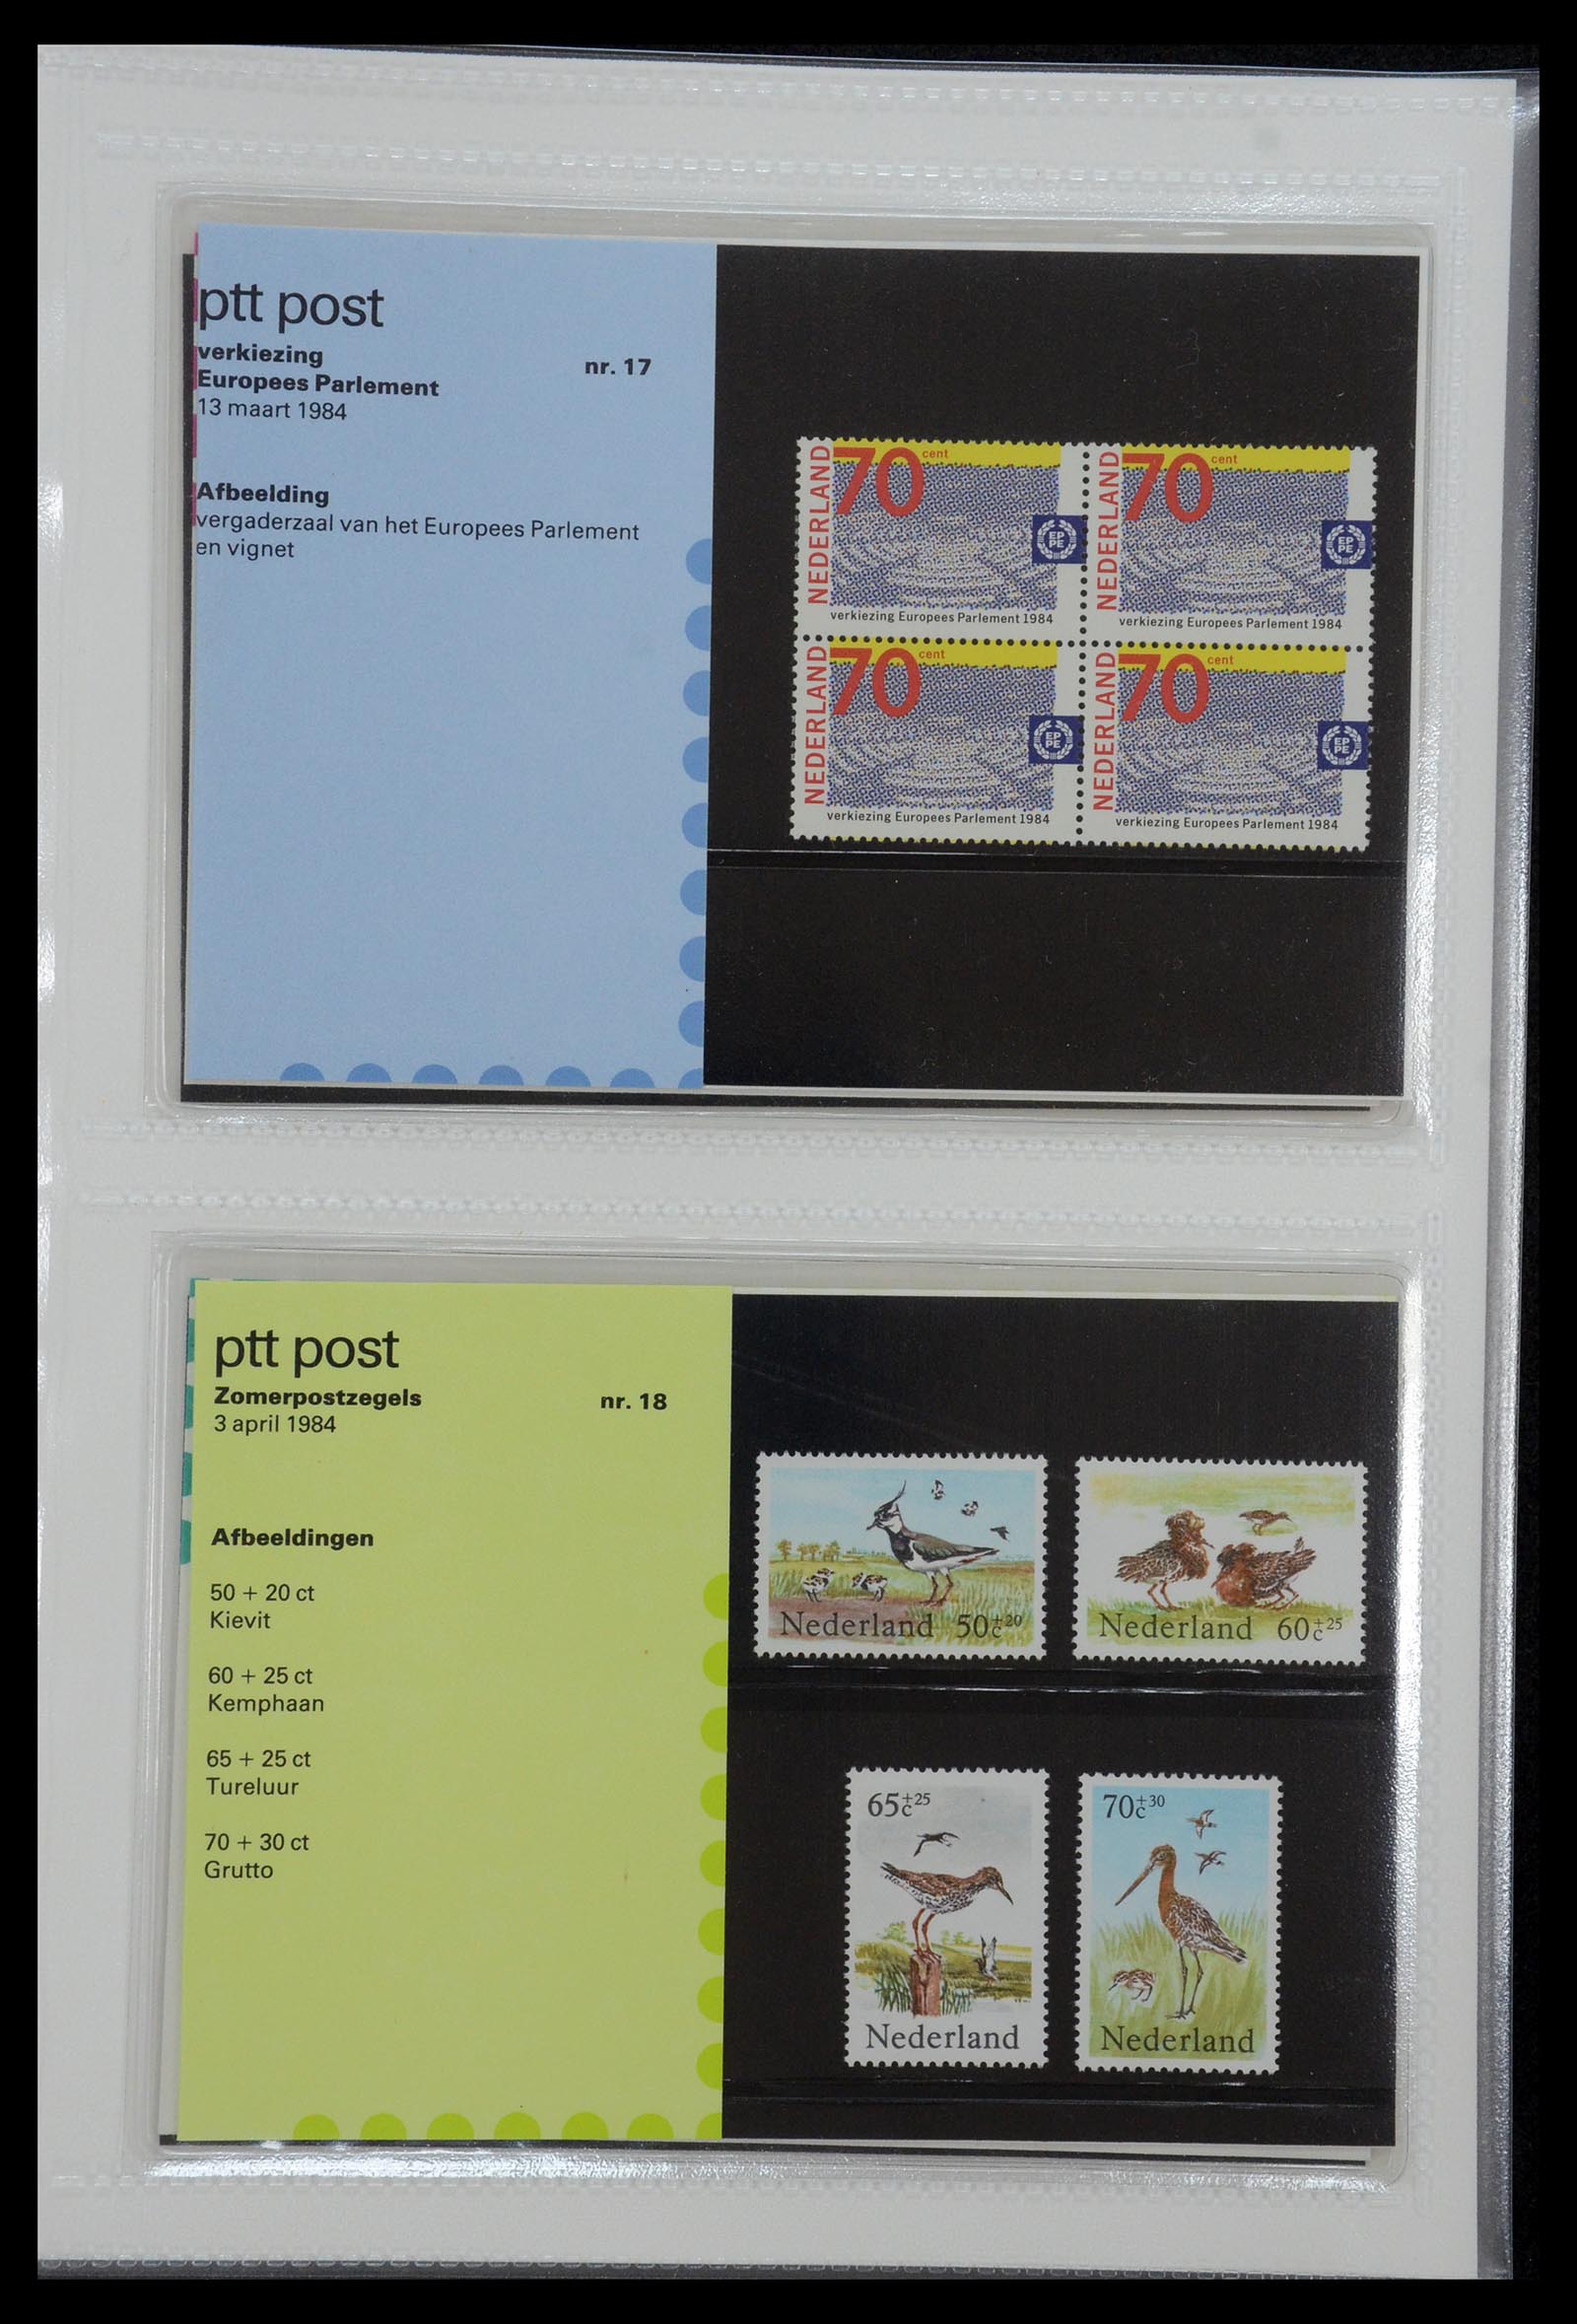 35144 009 - Stamp Collection 35144 Netherlands PTT presentation packs 1982-2021!